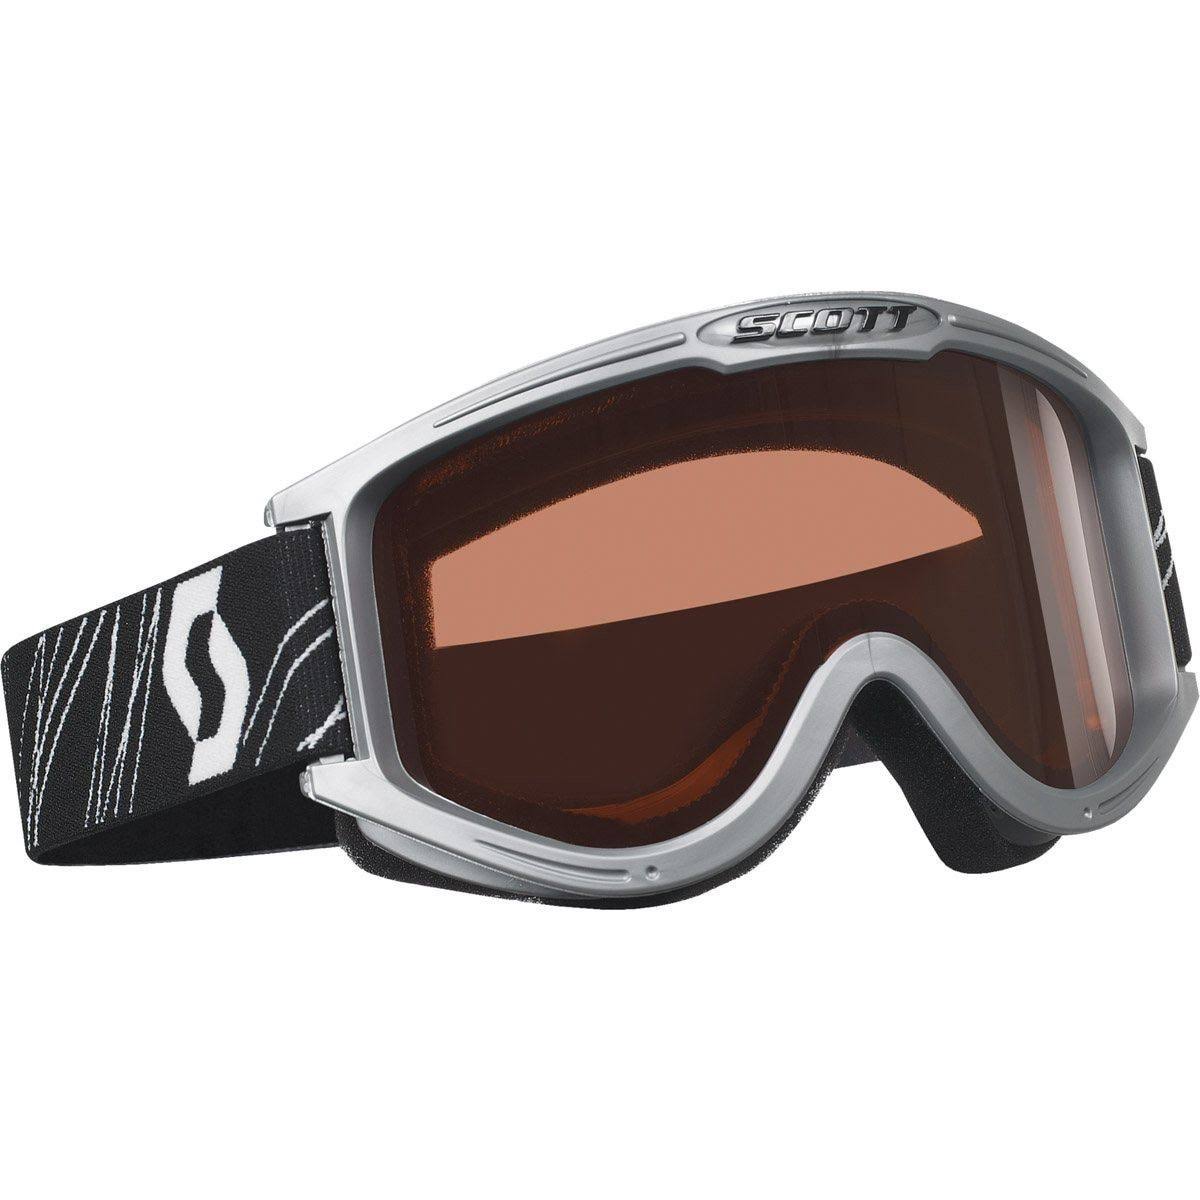 Scoot Classic Ski Snowboard Goggles Amplifier - Silver